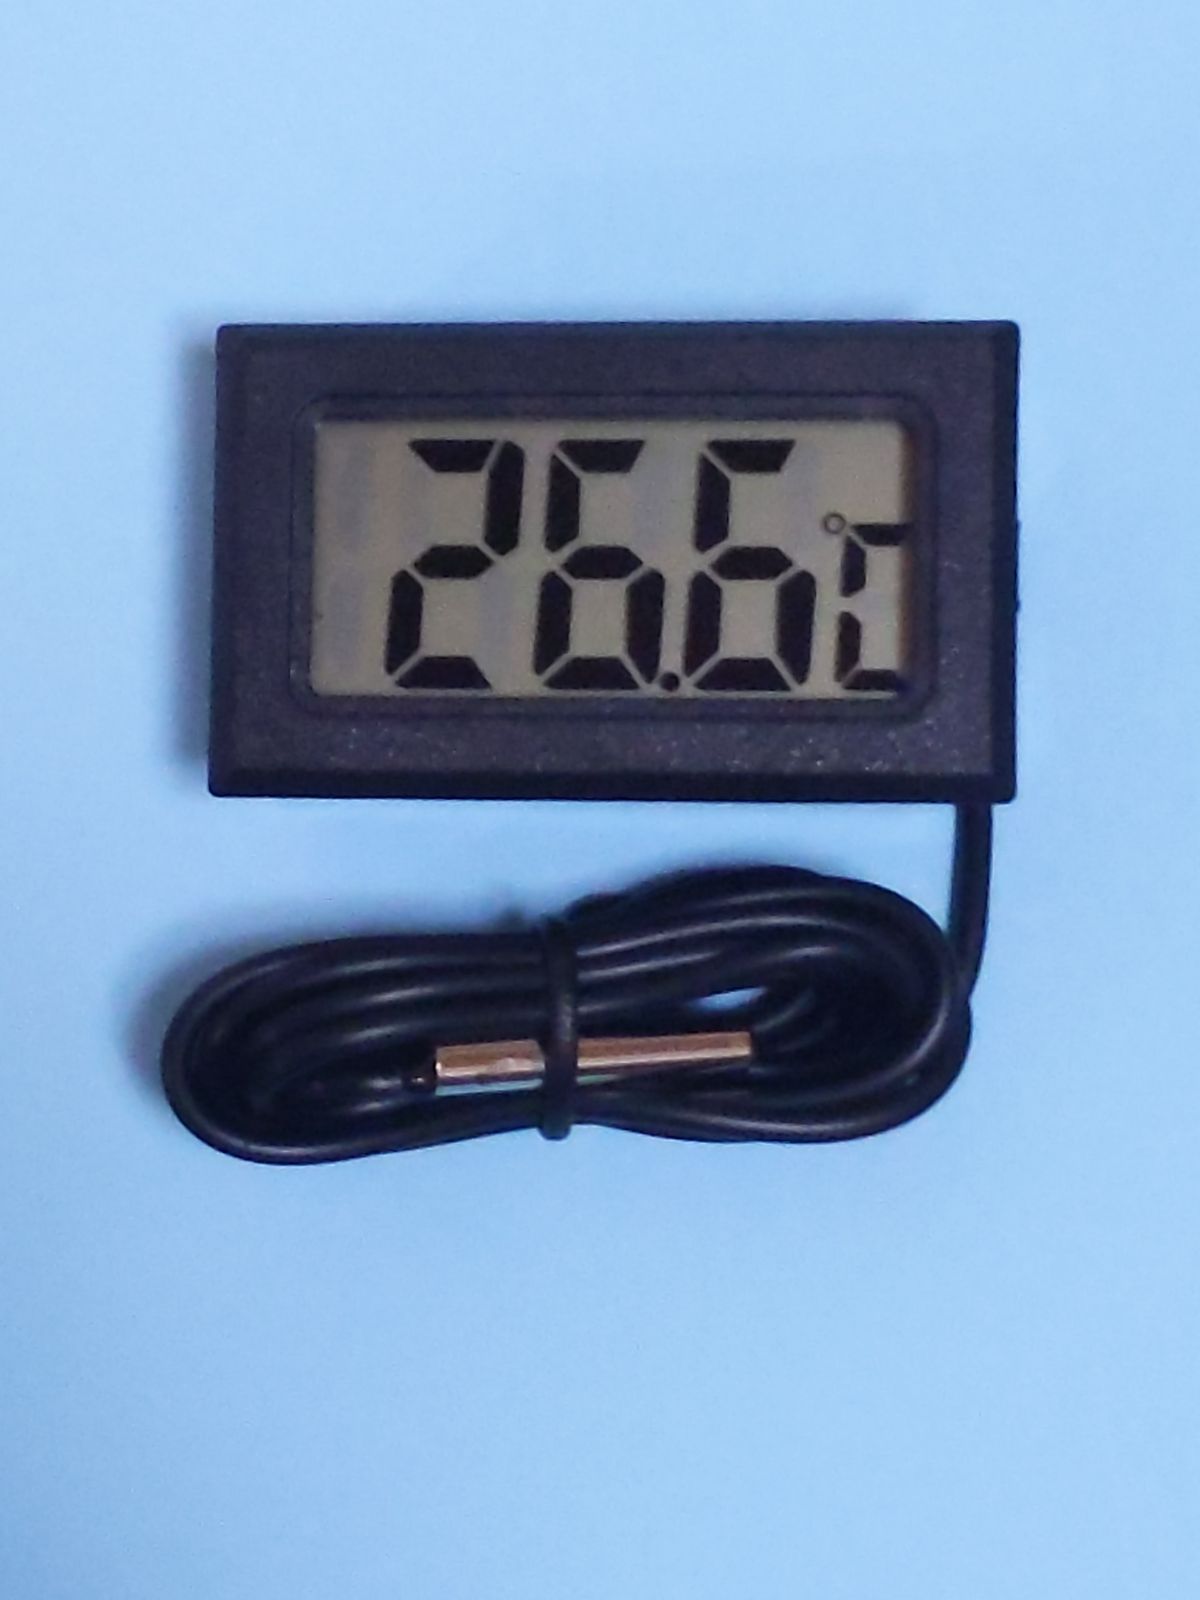 デジタル 水温計 温度計 センサーコード長さ1m LCD 液晶表示 アクアリウム 水槽 気温